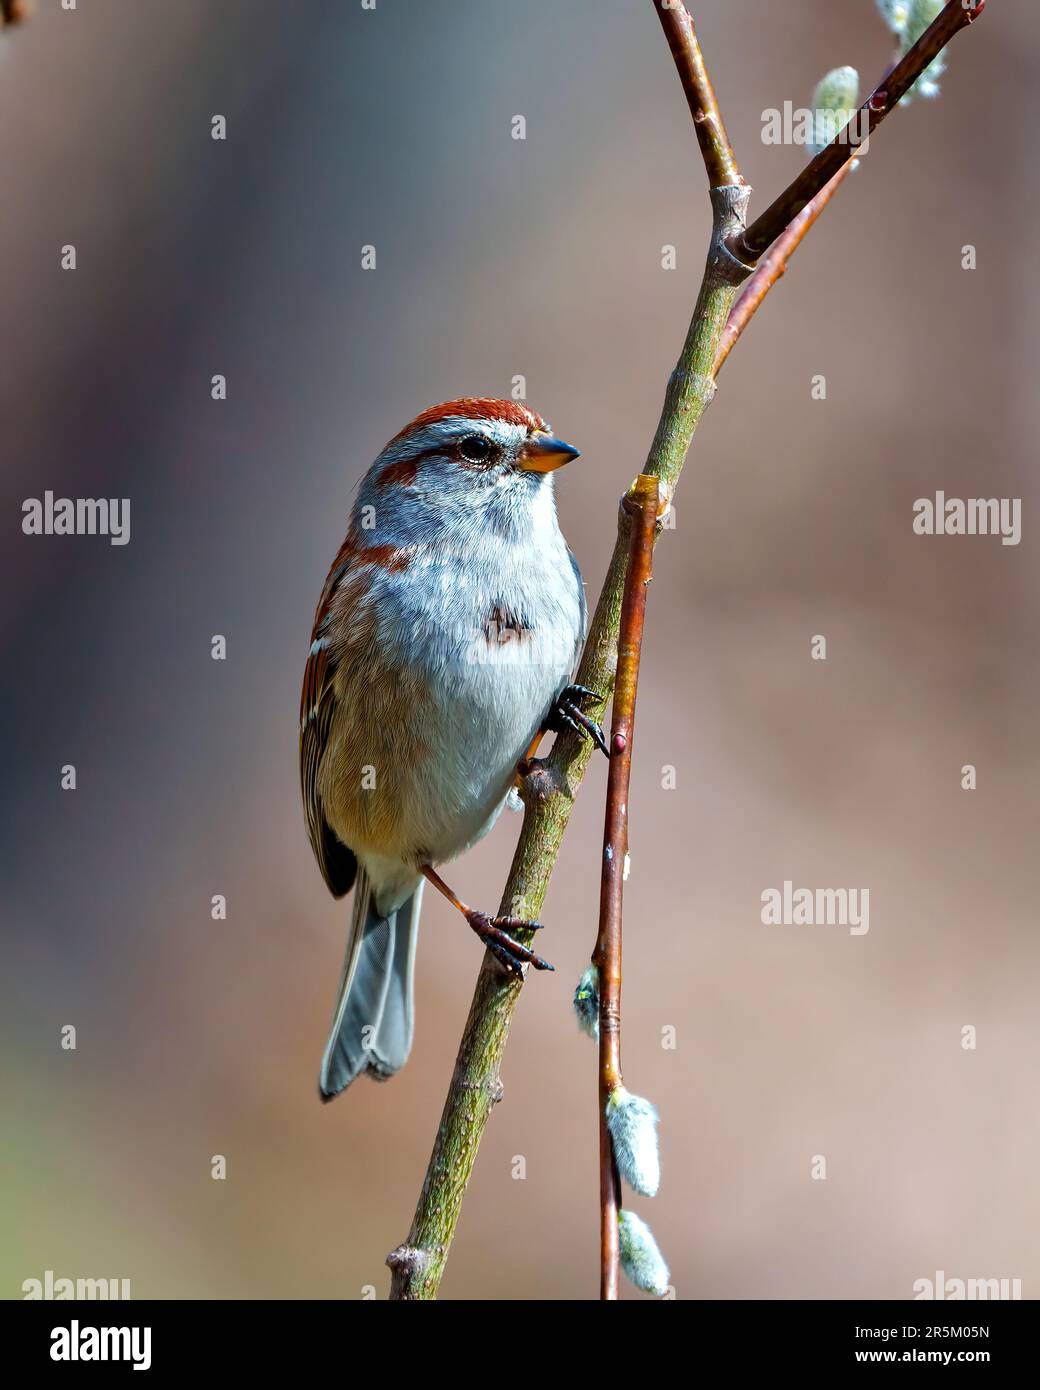 Vue rapprochée de l'American Tree Sparrow perchée sur la branche de bourgeon de feuilles d'arbre avec un arrière-plan brun flou dans son environnement et son habitat environnant. Bruant Banque D'Images